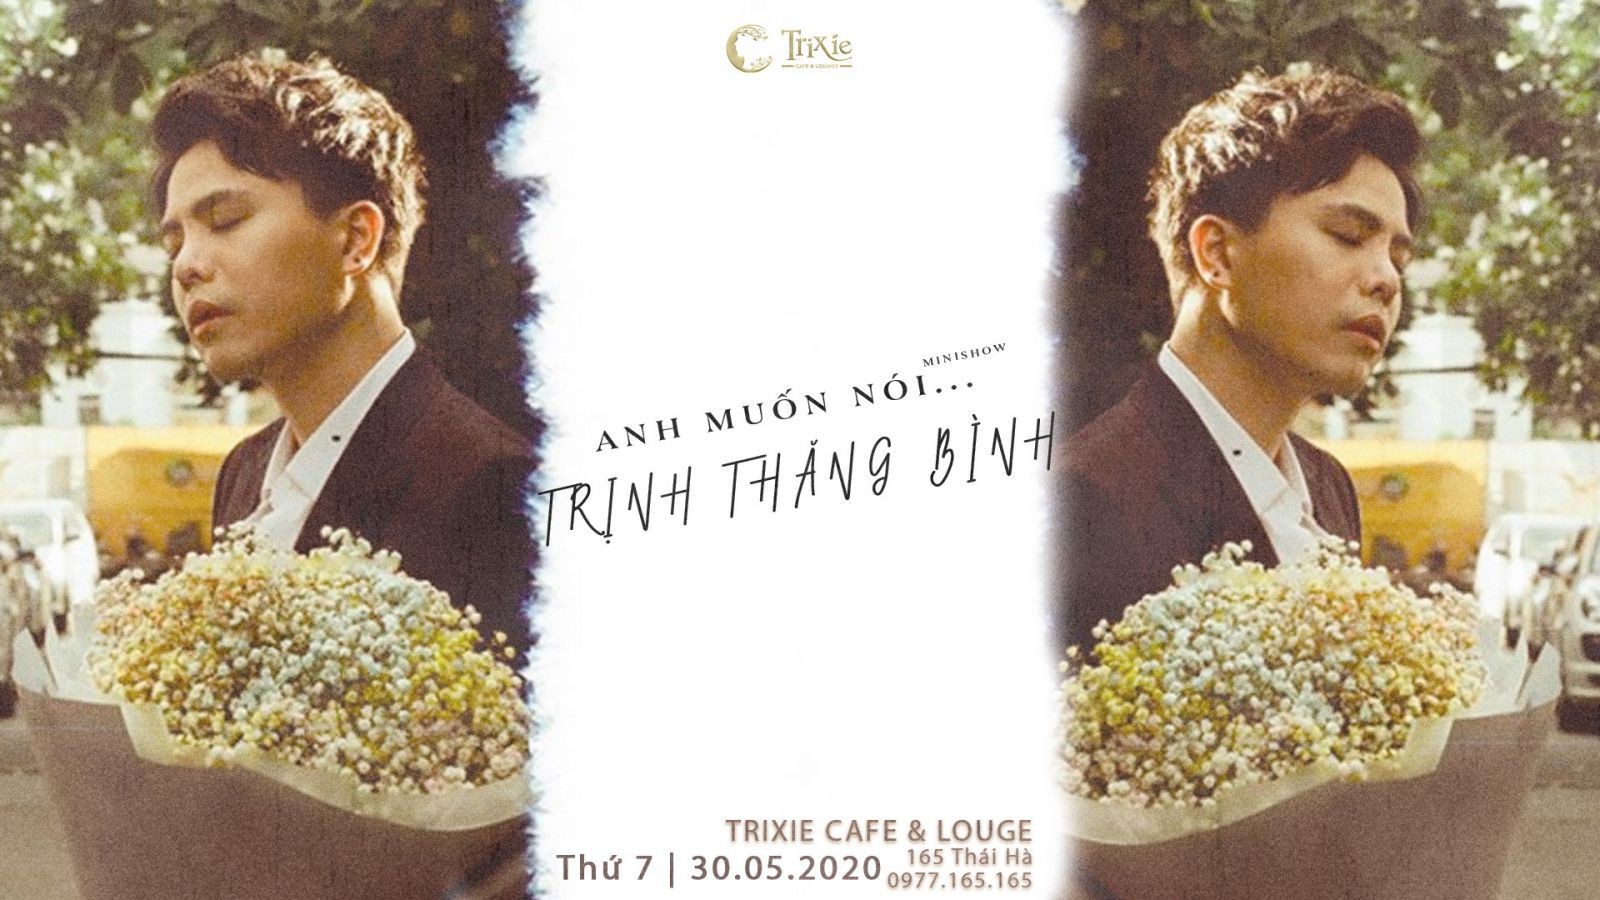 Minishow Trịnh Thăng Bình 30.05 tại Trixie Cafe